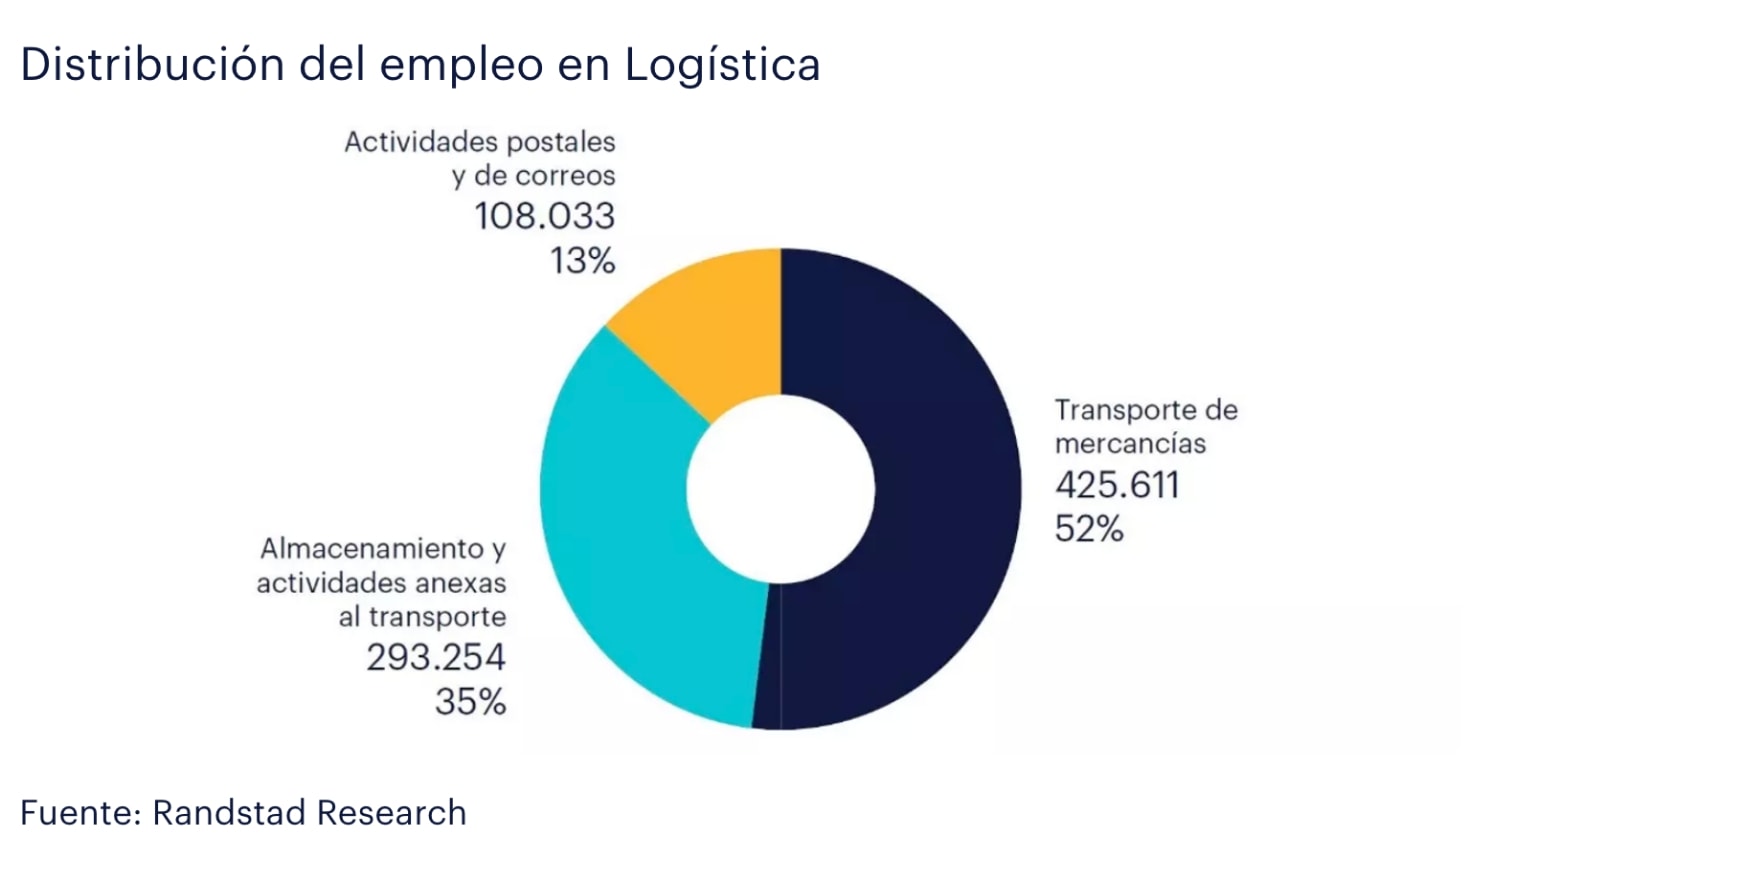 Diagrama que muestra la distribución del empleo en logística en España.